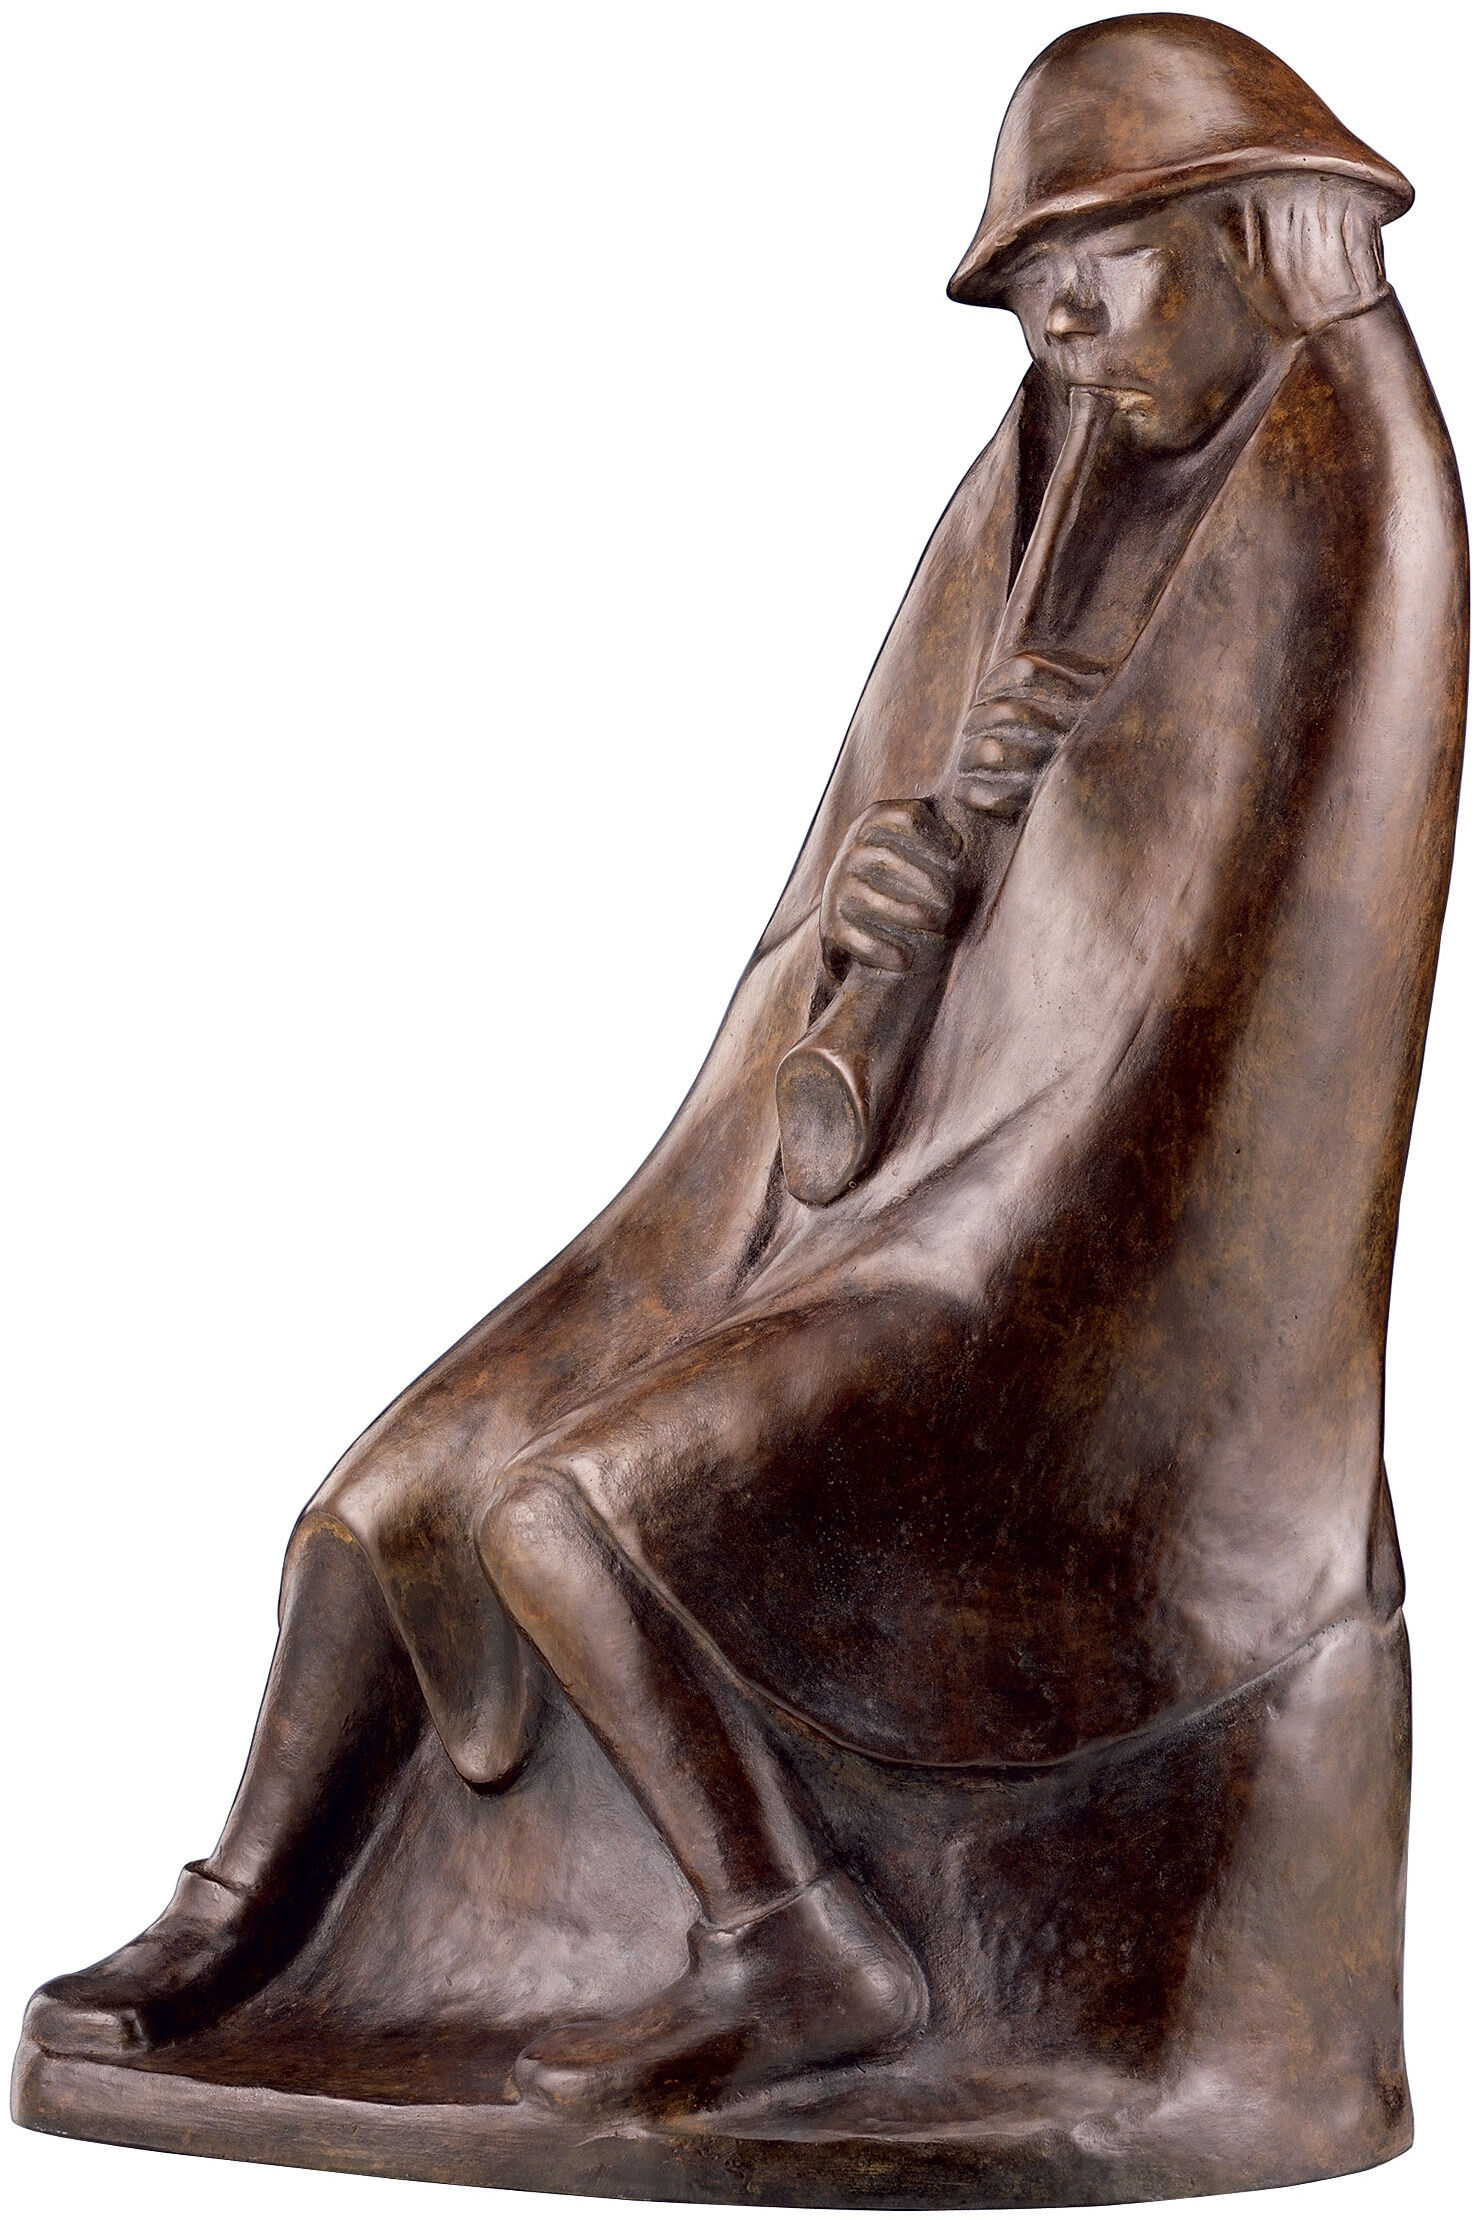 Sculptuur "De Fluitspeler" (1936), bronzen reductie von Ernst Barlach